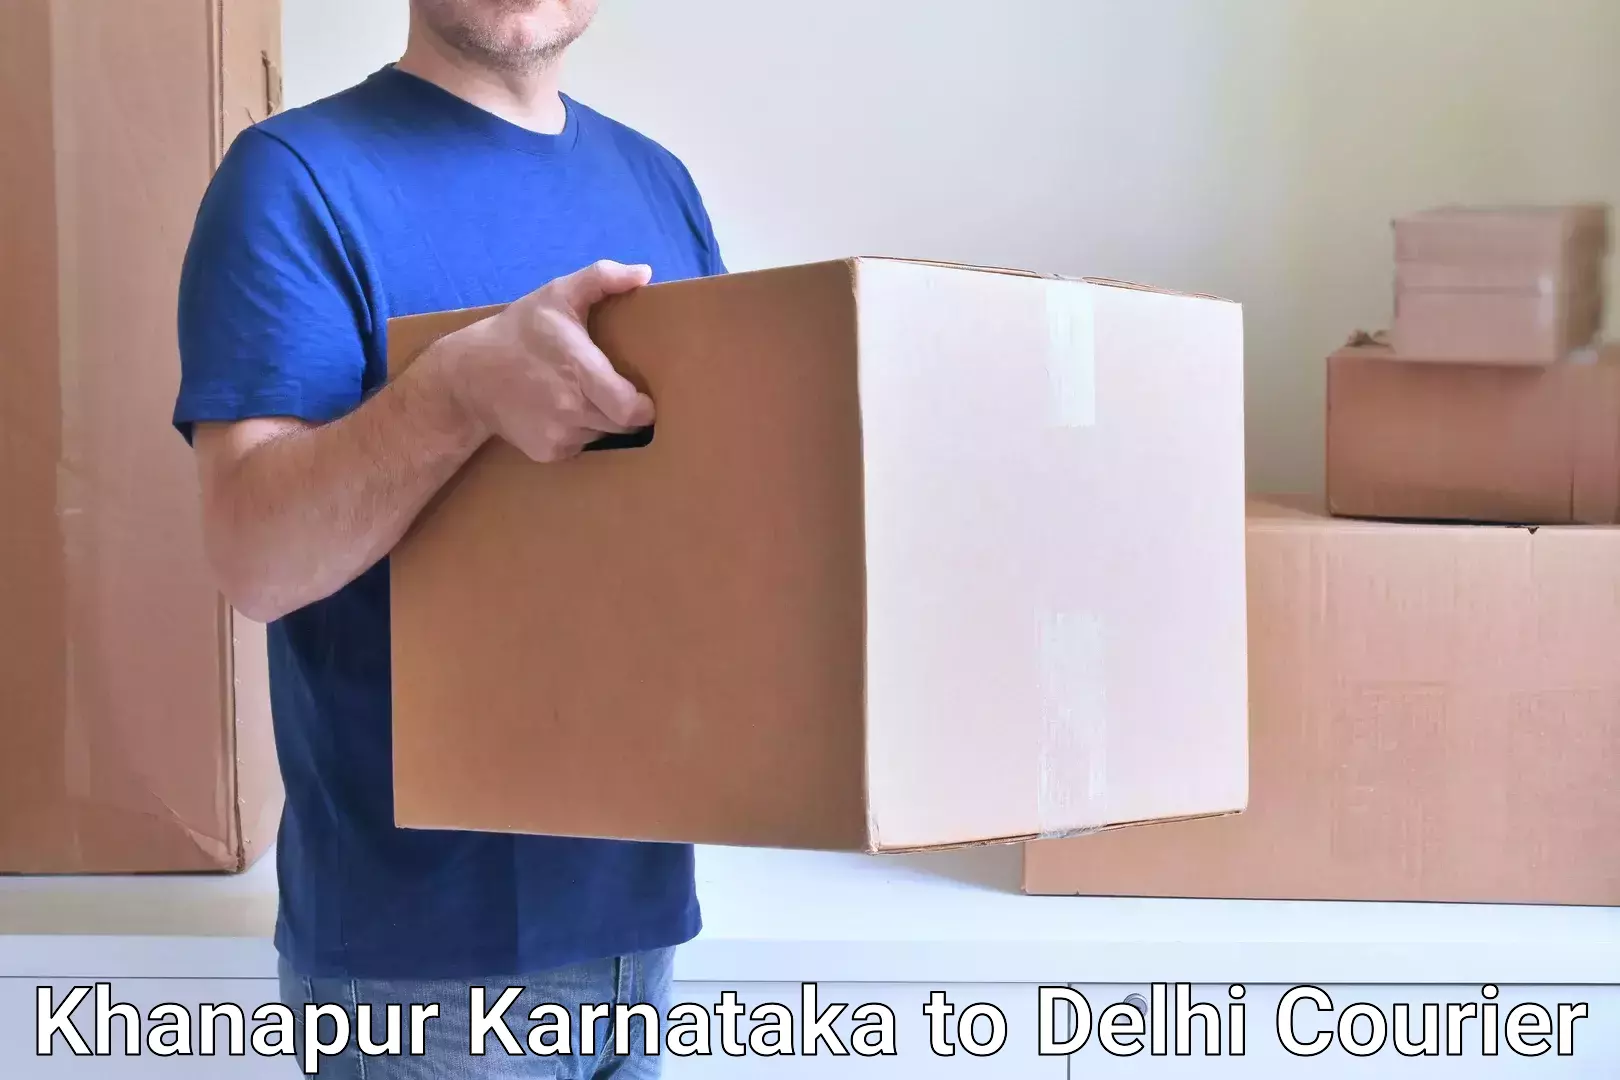 24/7 courier service in Khanapur Karnataka to Ashok Vihar